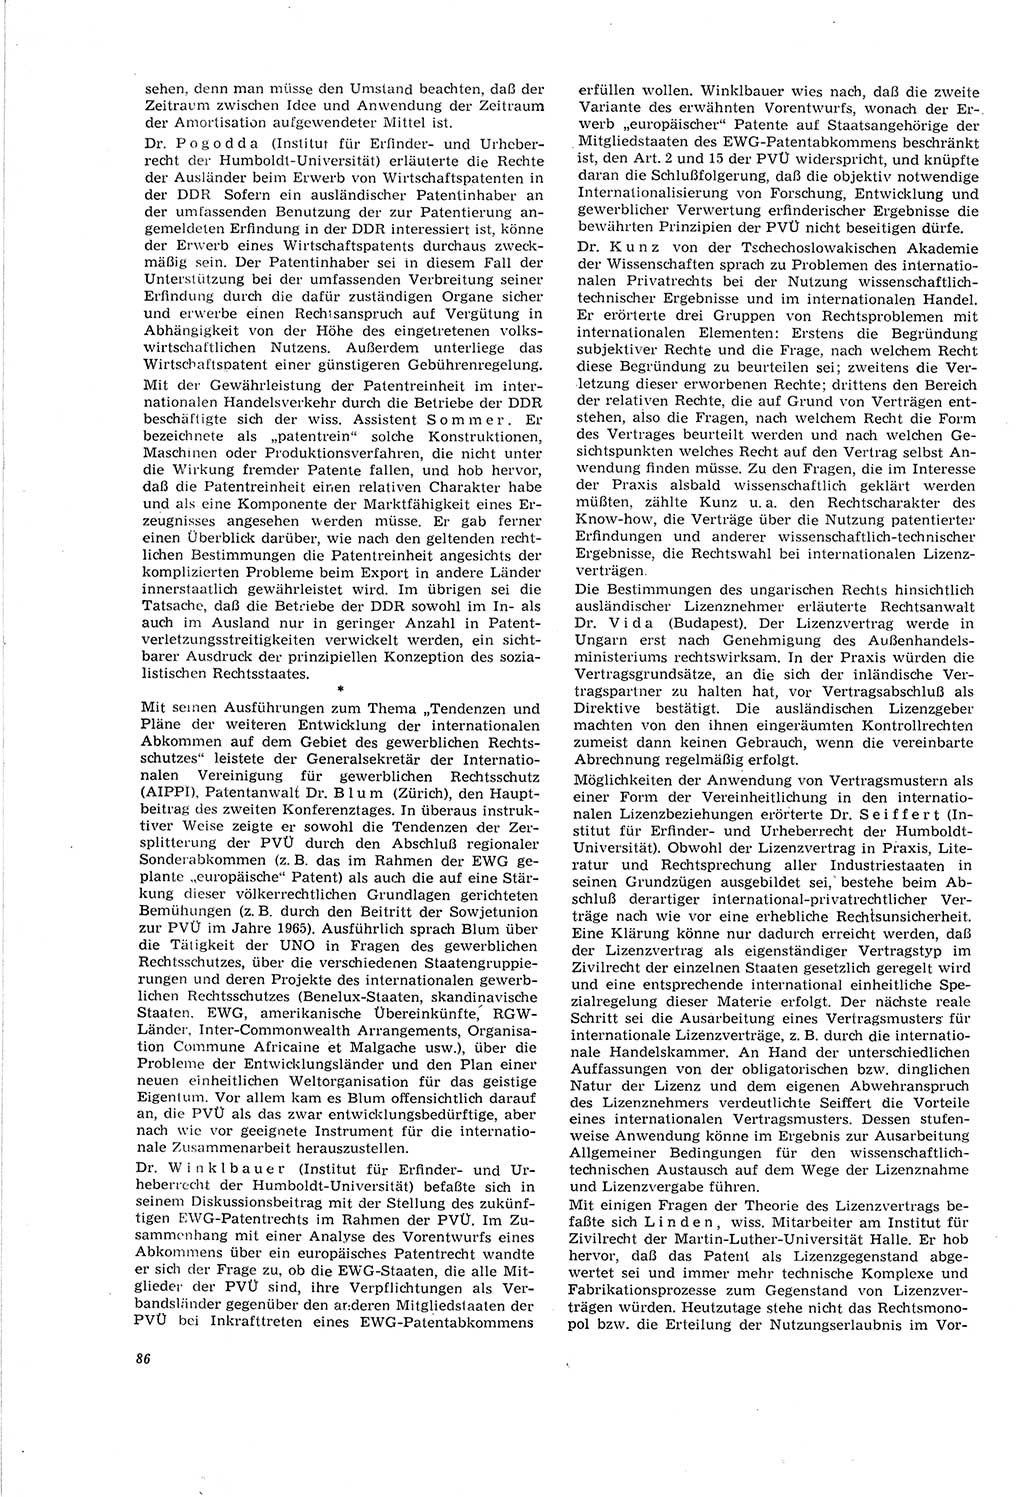 Neue Justiz (NJ), Zeitschrift für Recht und Rechtswissenschaft [Deutsche Demokratische Republik (DDR)], 20. Jahrgang 1966, Seite 86 (NJ DDR 1966, S. 86)